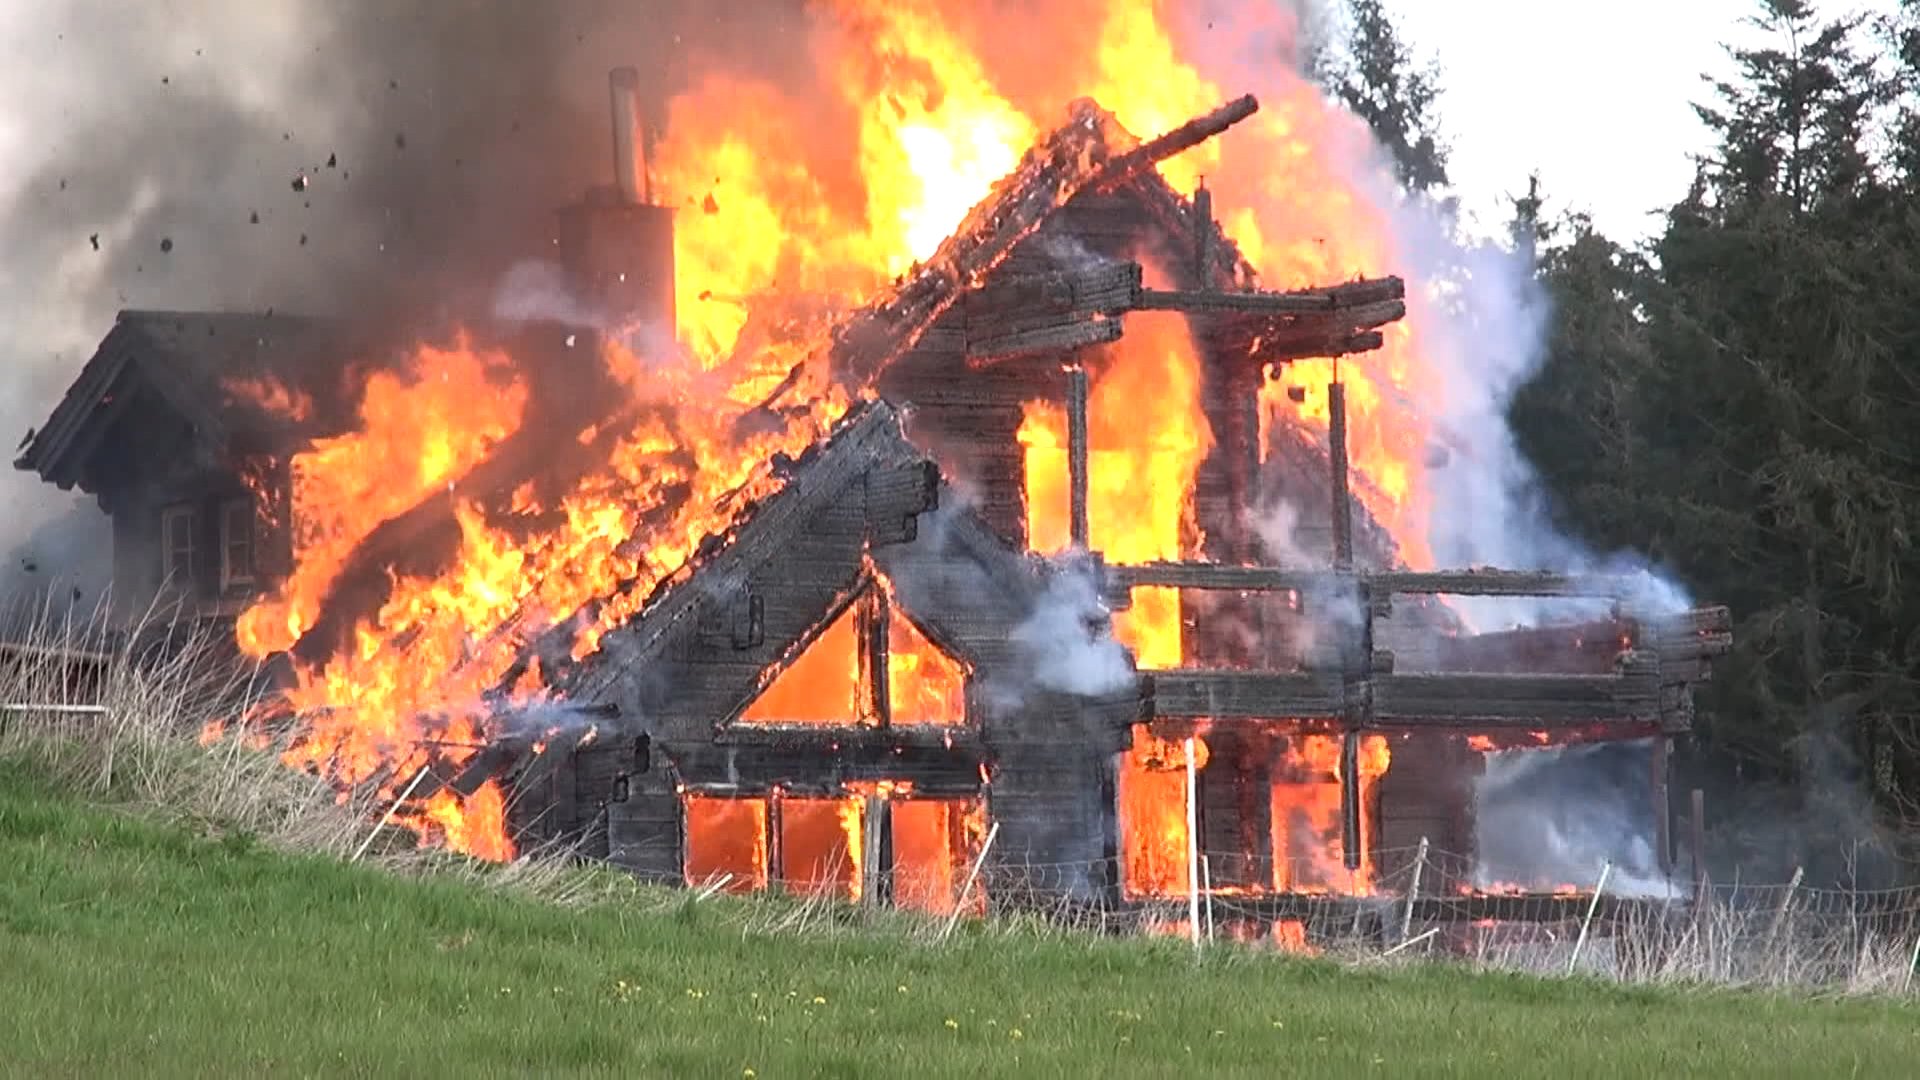 Holzhaus brennt auf Hühnerfarm nieder 3 Hunde sterben im Feuer